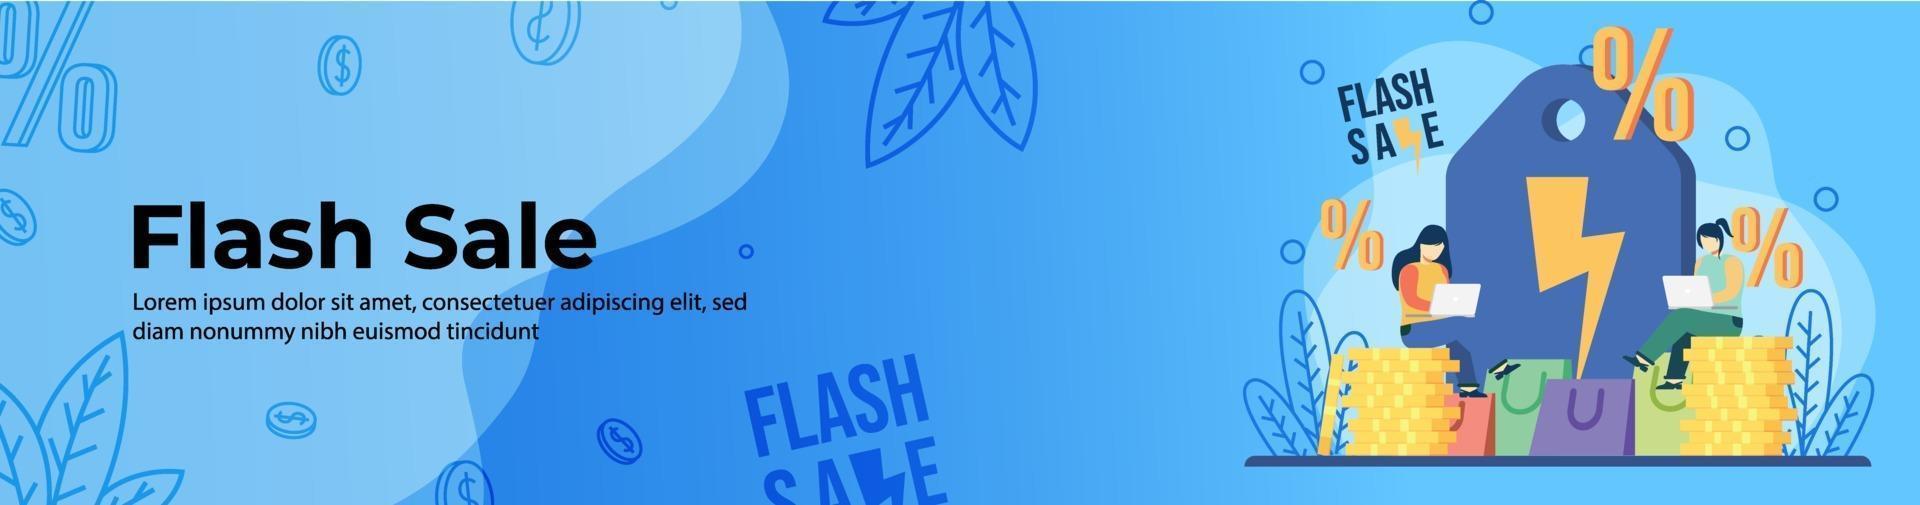 flash försäljning webb banner design vektor